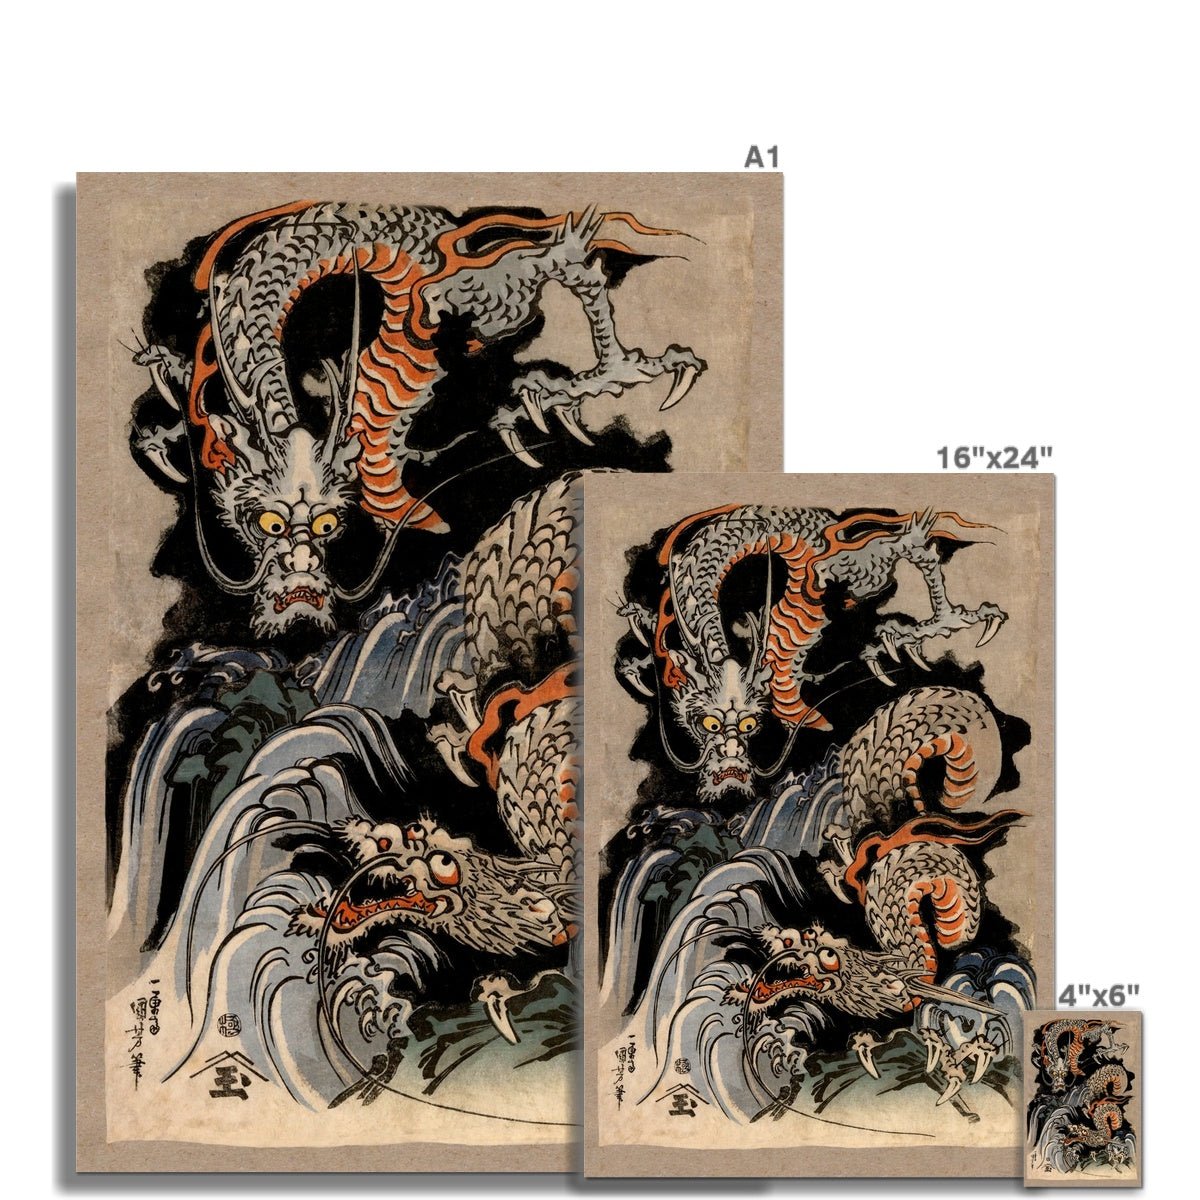 giclee 4"x6" Utagawa Kuniyoshi Dragon: Japanese Mythology Ukiyo-e Antique Serpent (Gift for Him) Woodblock Ukiyo-e Yokai Folklore Fine Art Print